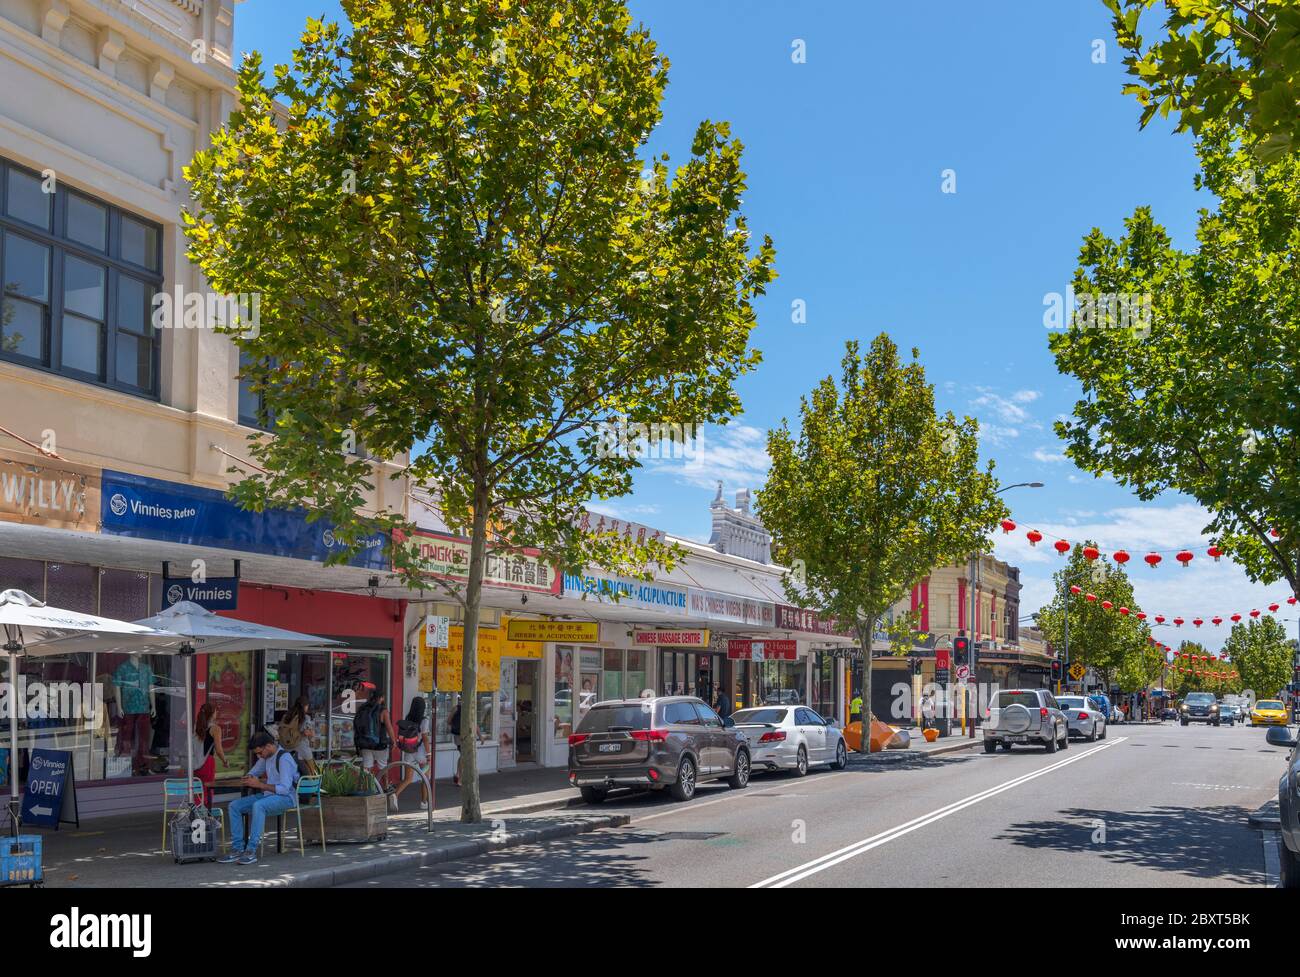 William Street dans le quartier de Northbridge, Perth, Australie occidentale, Australie Banque D'Images